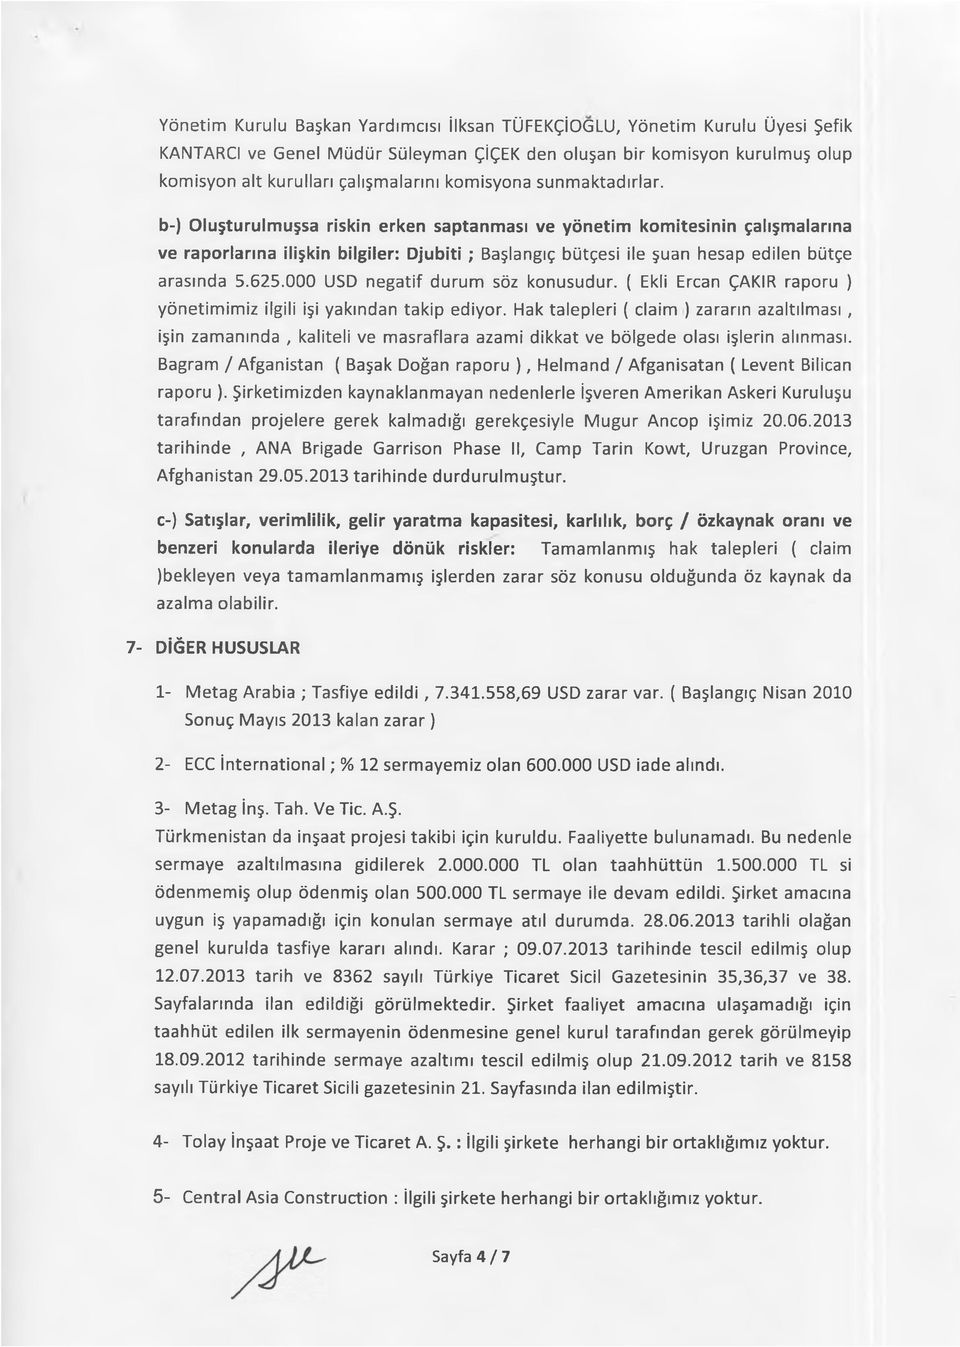 b-) Oluşturulmuşsa riskin erken saptanması ve yönetim komitesinin çalışmalarına ve raporlarına ilişkin bilgiler: Djubiti; Başlangıç bütçesi ile şuan hesap edilen bütçe arasında 5.625.